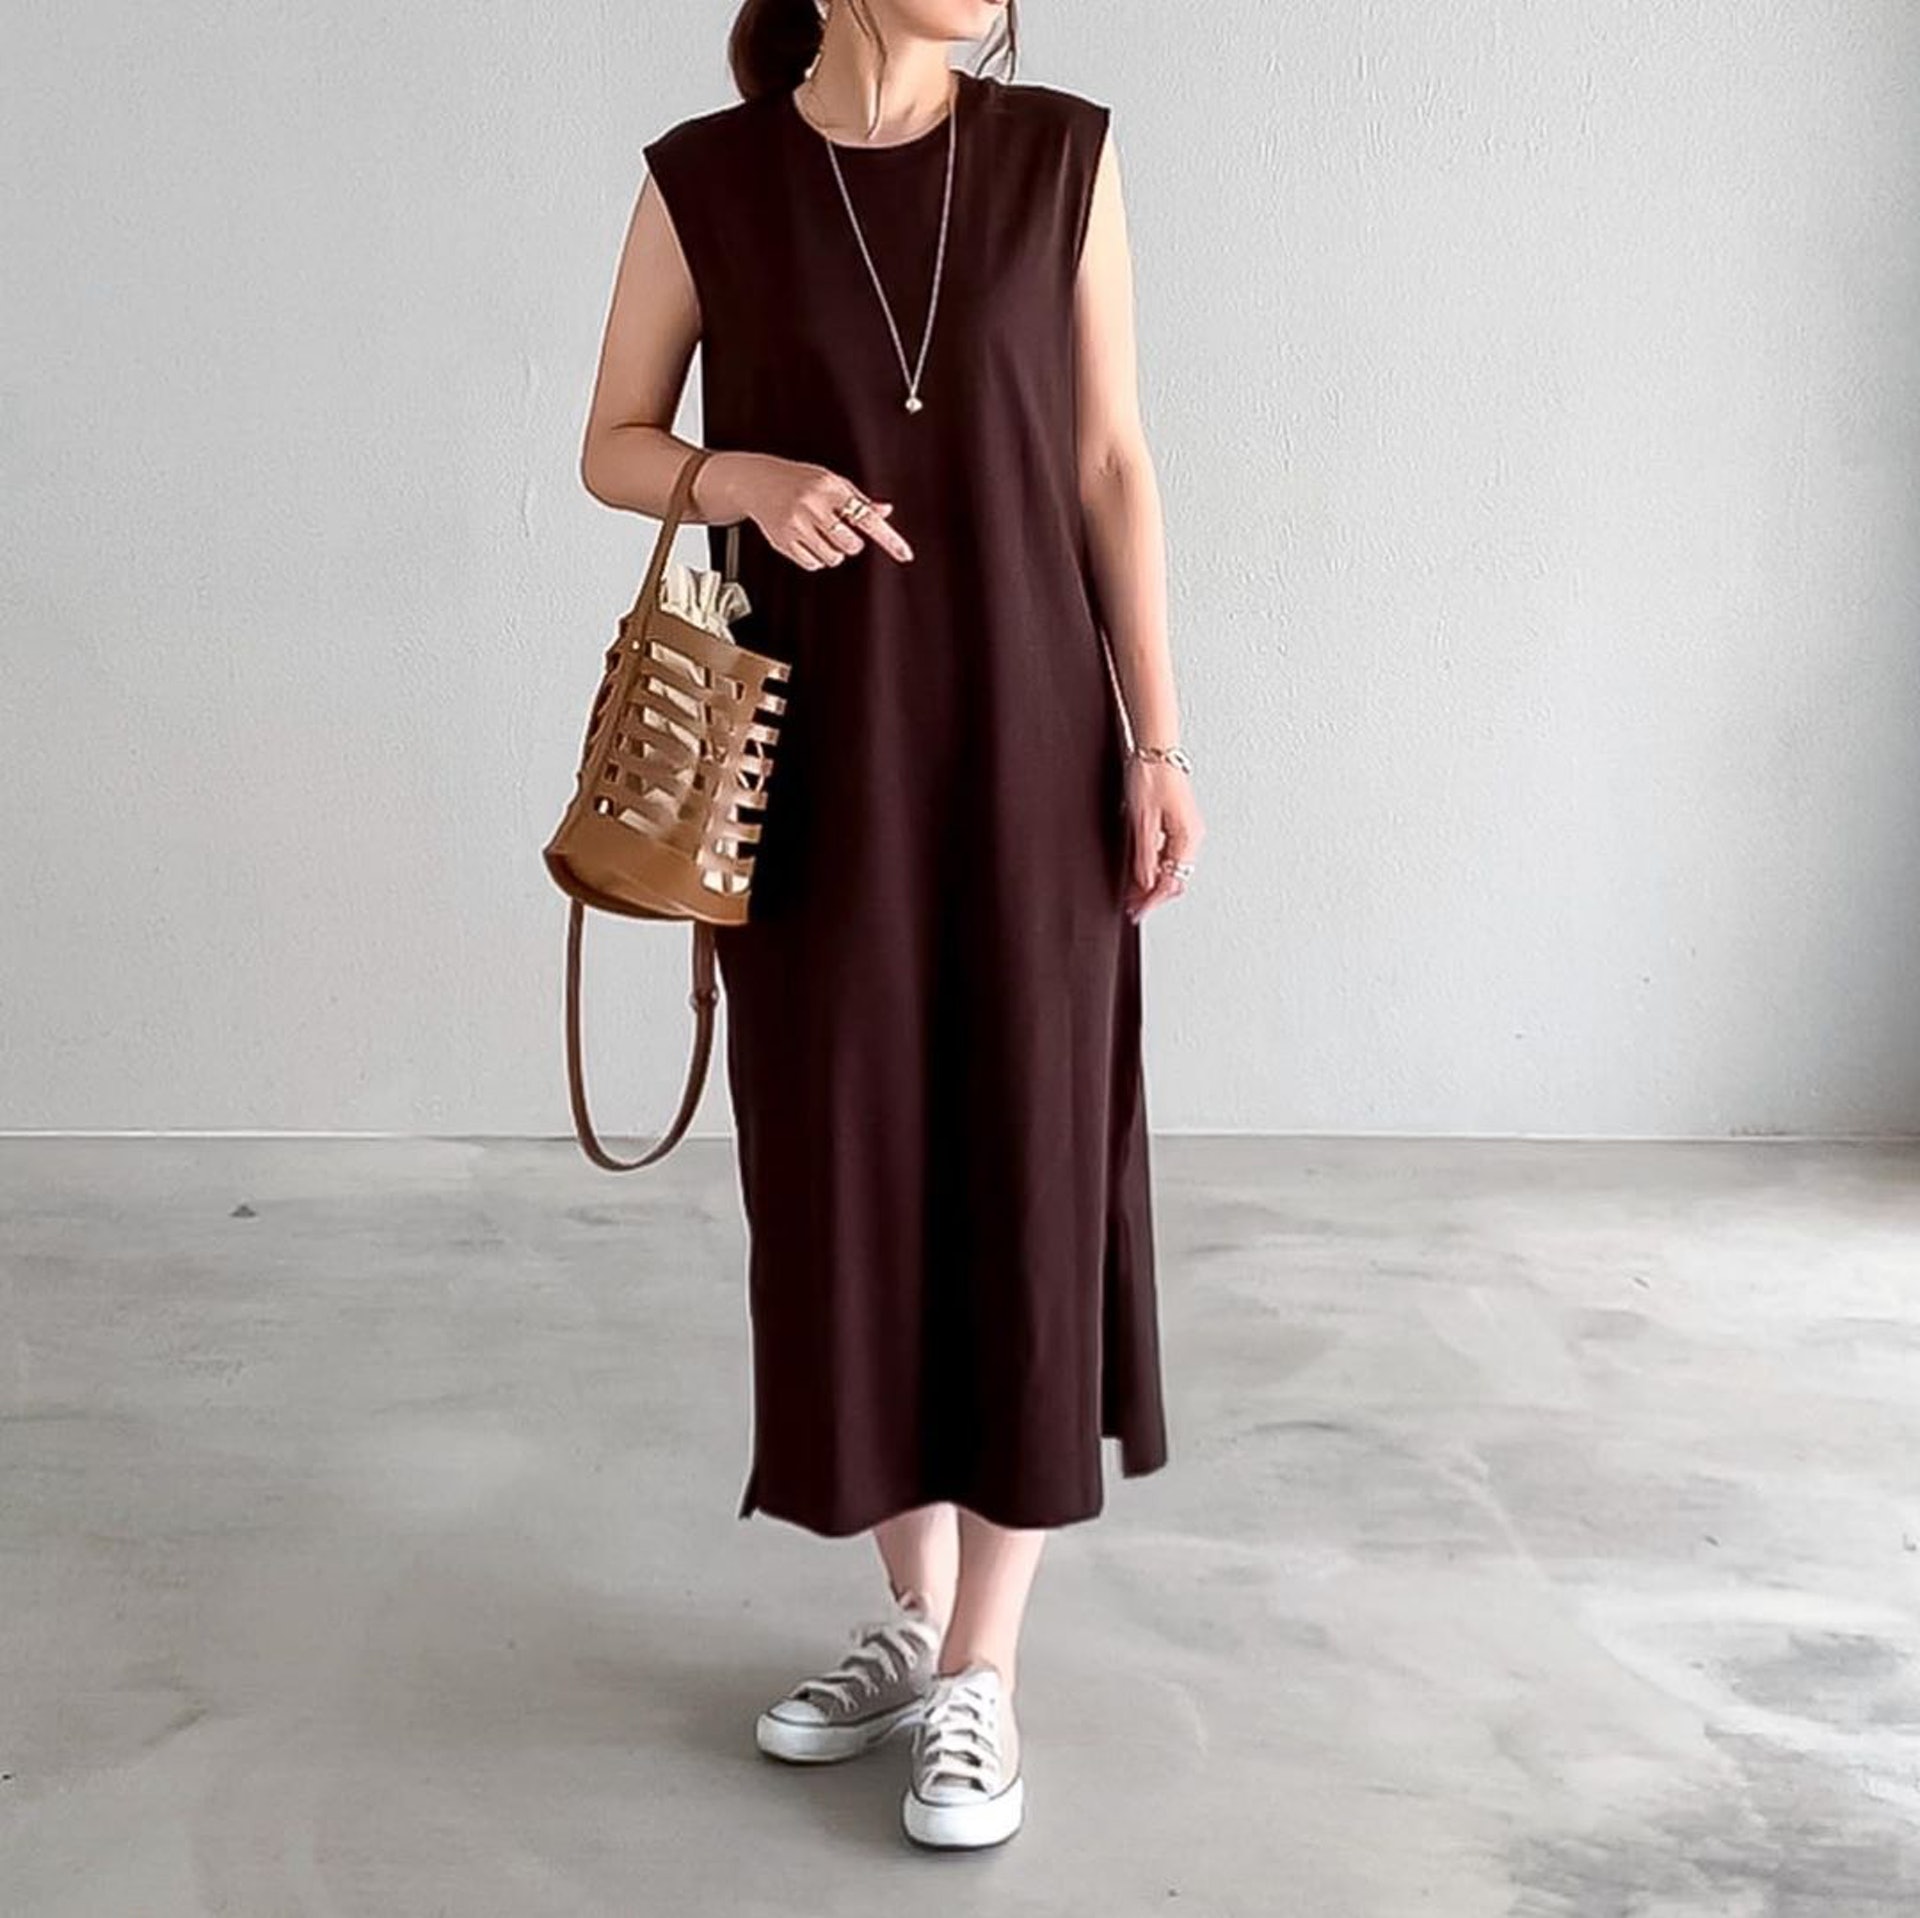 日本媽媽__htm.i_僅154cm高，喜愛購買Zara、Uniqlo等服裝，示範一件多穿。(__htm.i_@Instagram)